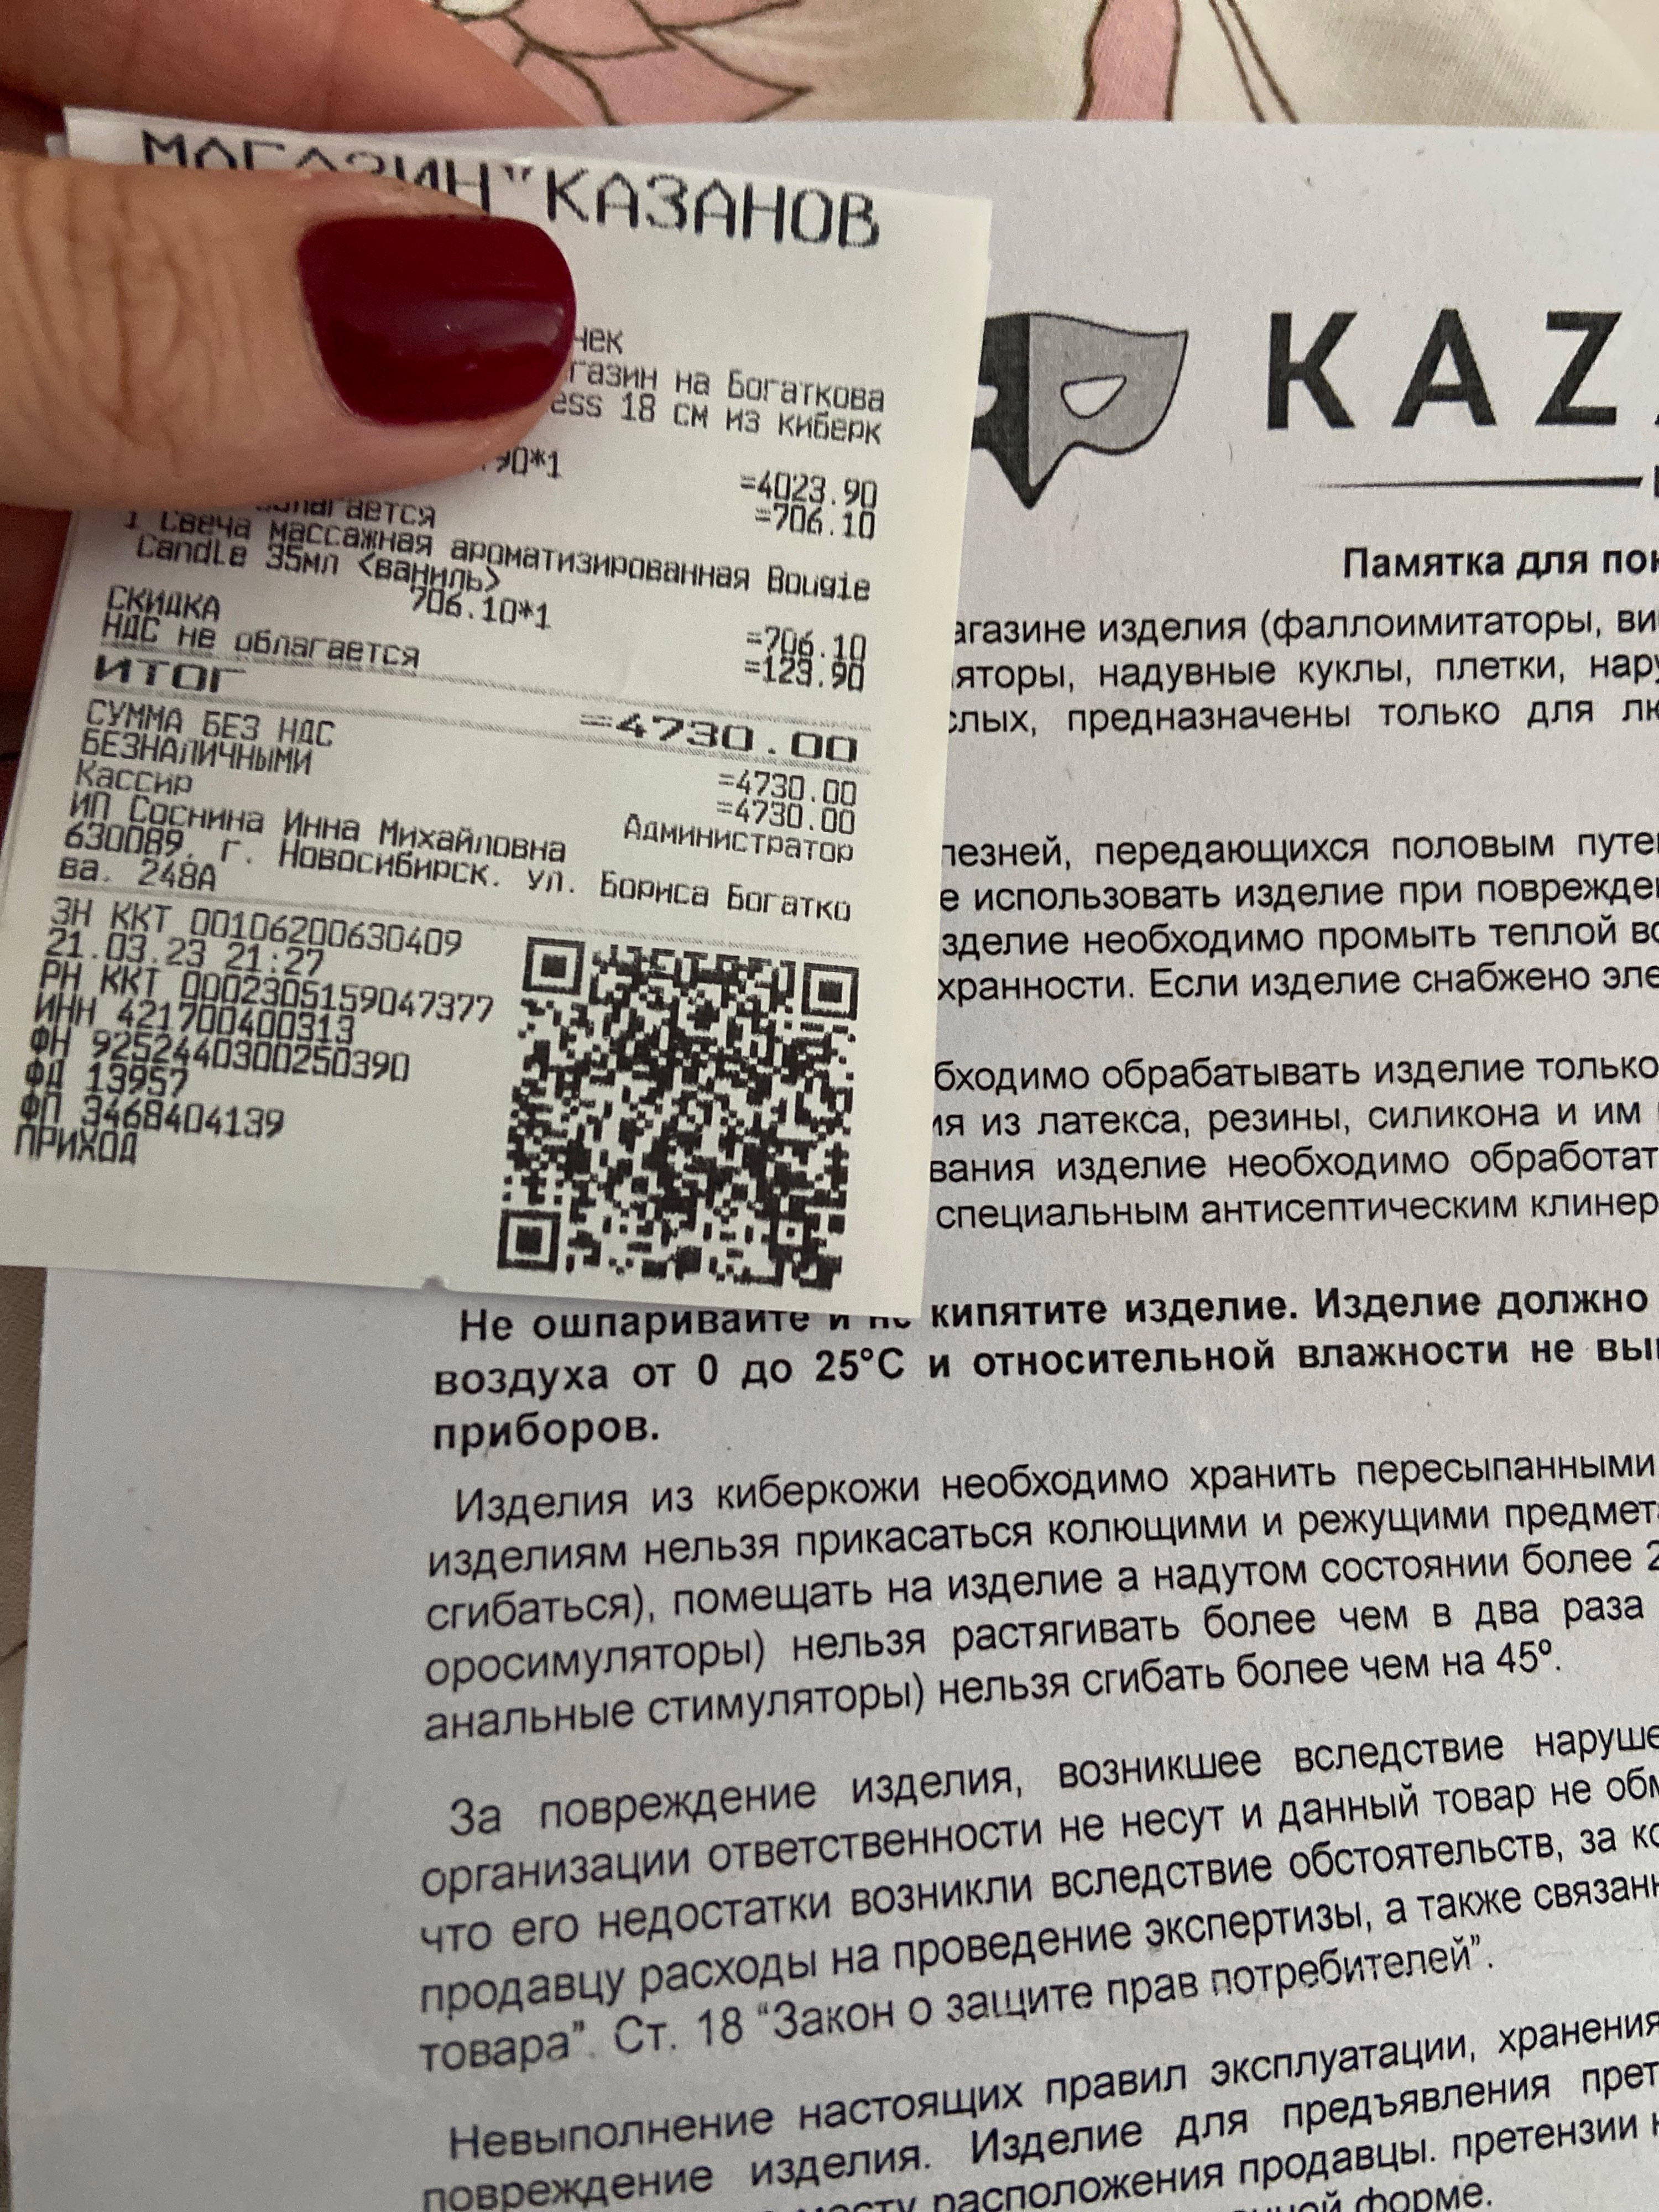 Интимные товары в Новосибирске — купите недорого по цене от 22 рублей в интернет аптеке AltaiMag